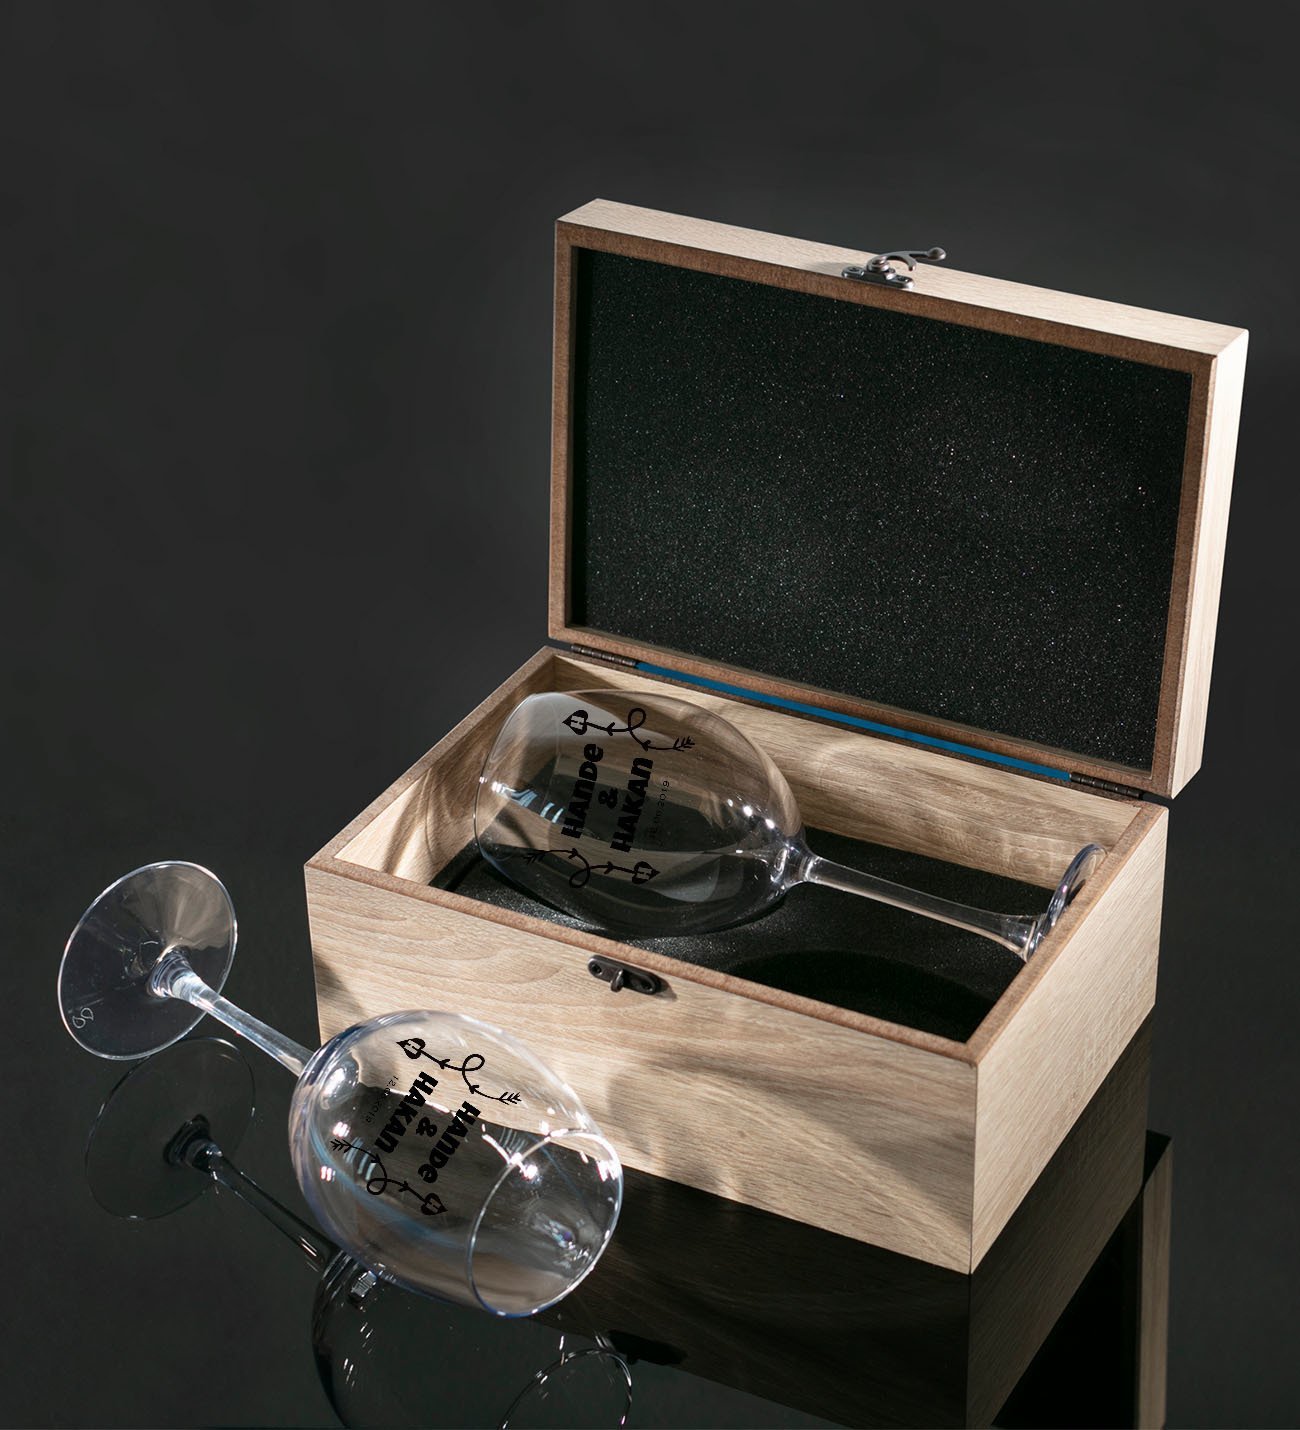 Kişiye Özel Ahşap Kutuda Çift İsimli Tarihli İkili Şarap Kadehi Hediye Seti Model 5